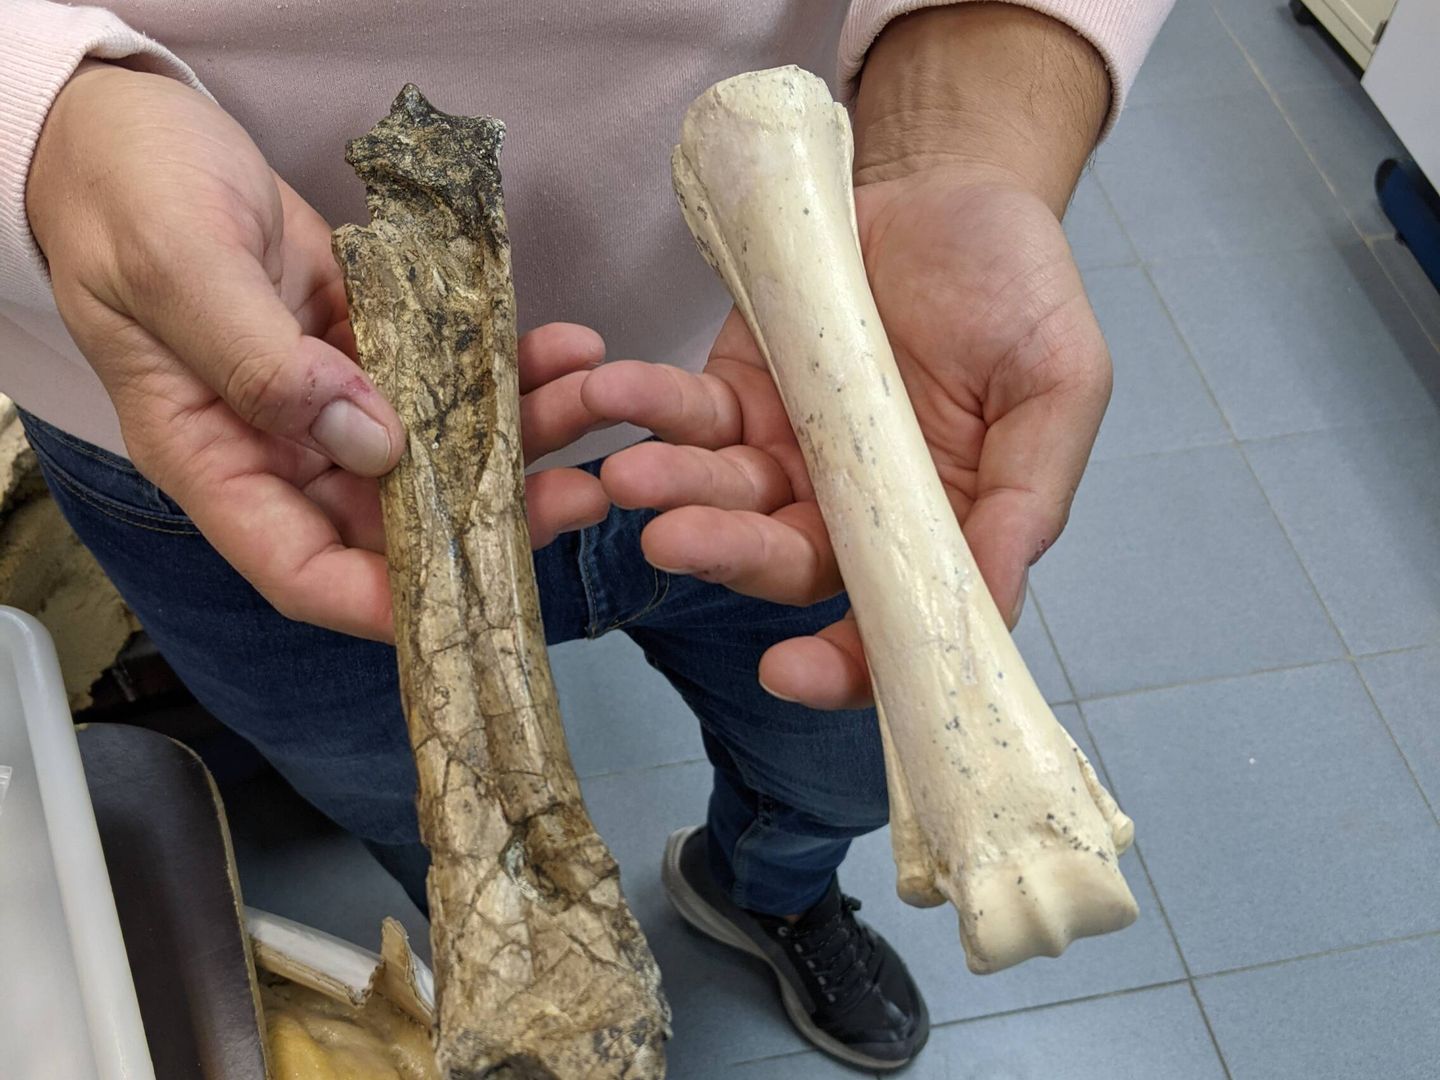 A la izquierda, el típico fósil que se encuentra en un yacimiento; a la derecha un fósil extraído de Batallones. (A. V.)